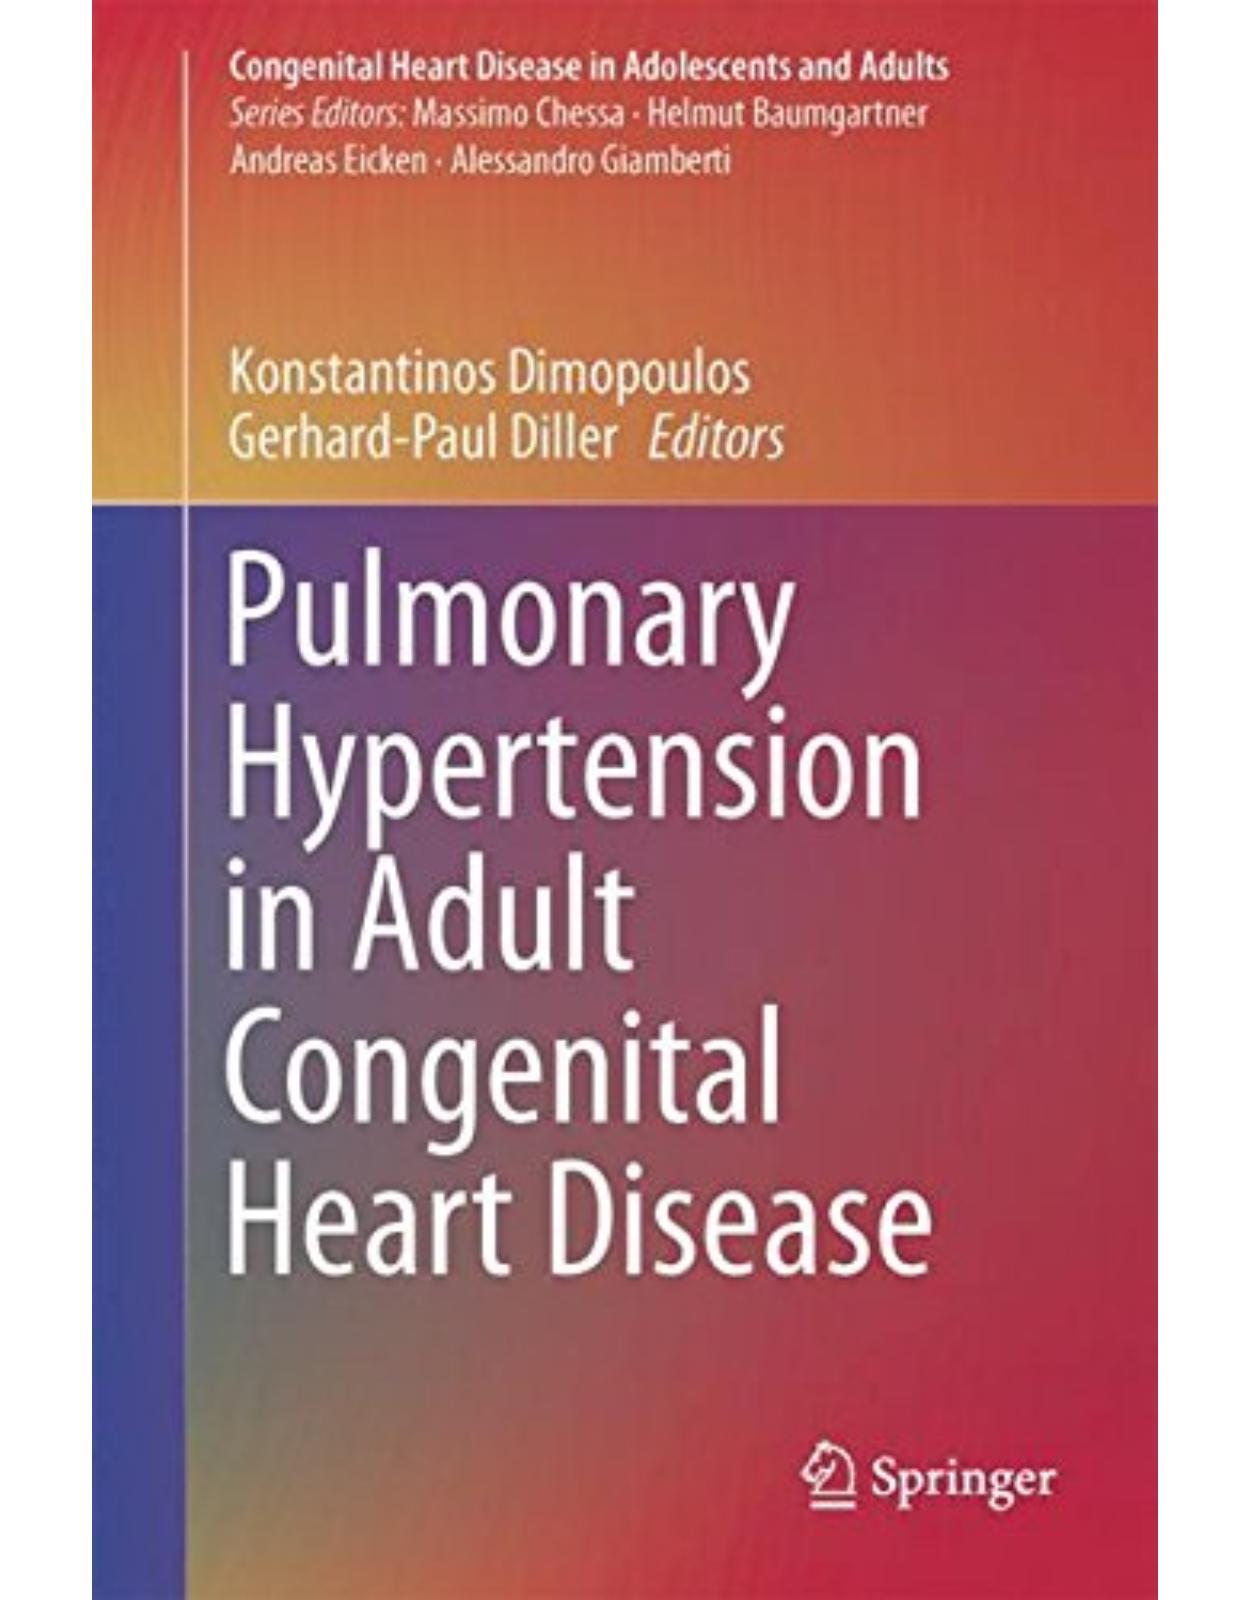 Pulmonary Hypertension in Adult Congenital Heart Disease 